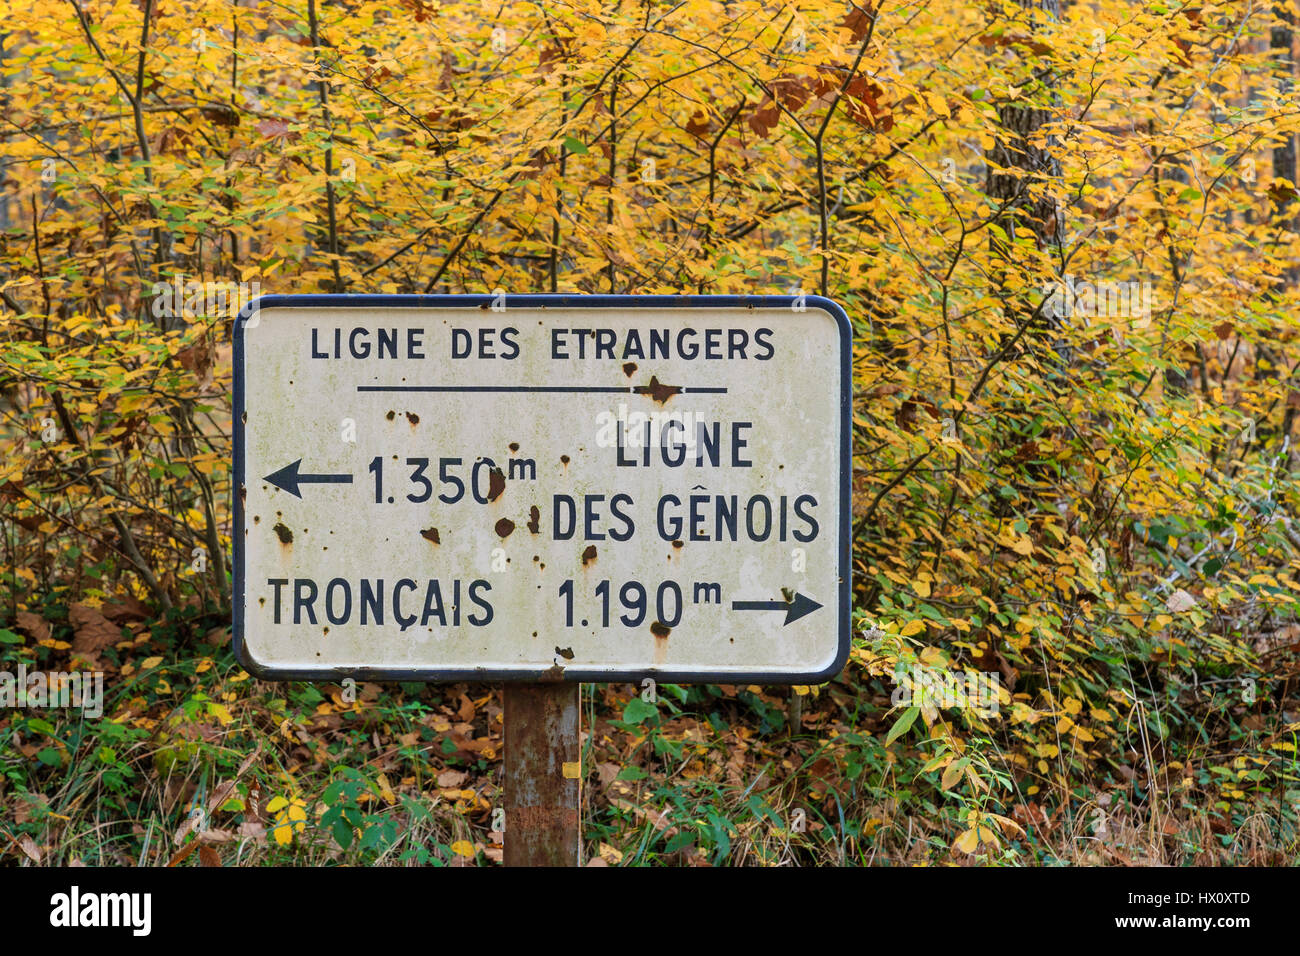 France, Allier, Tronçais forest, Saint-Bonnet-Troncais, signage Stock Photo